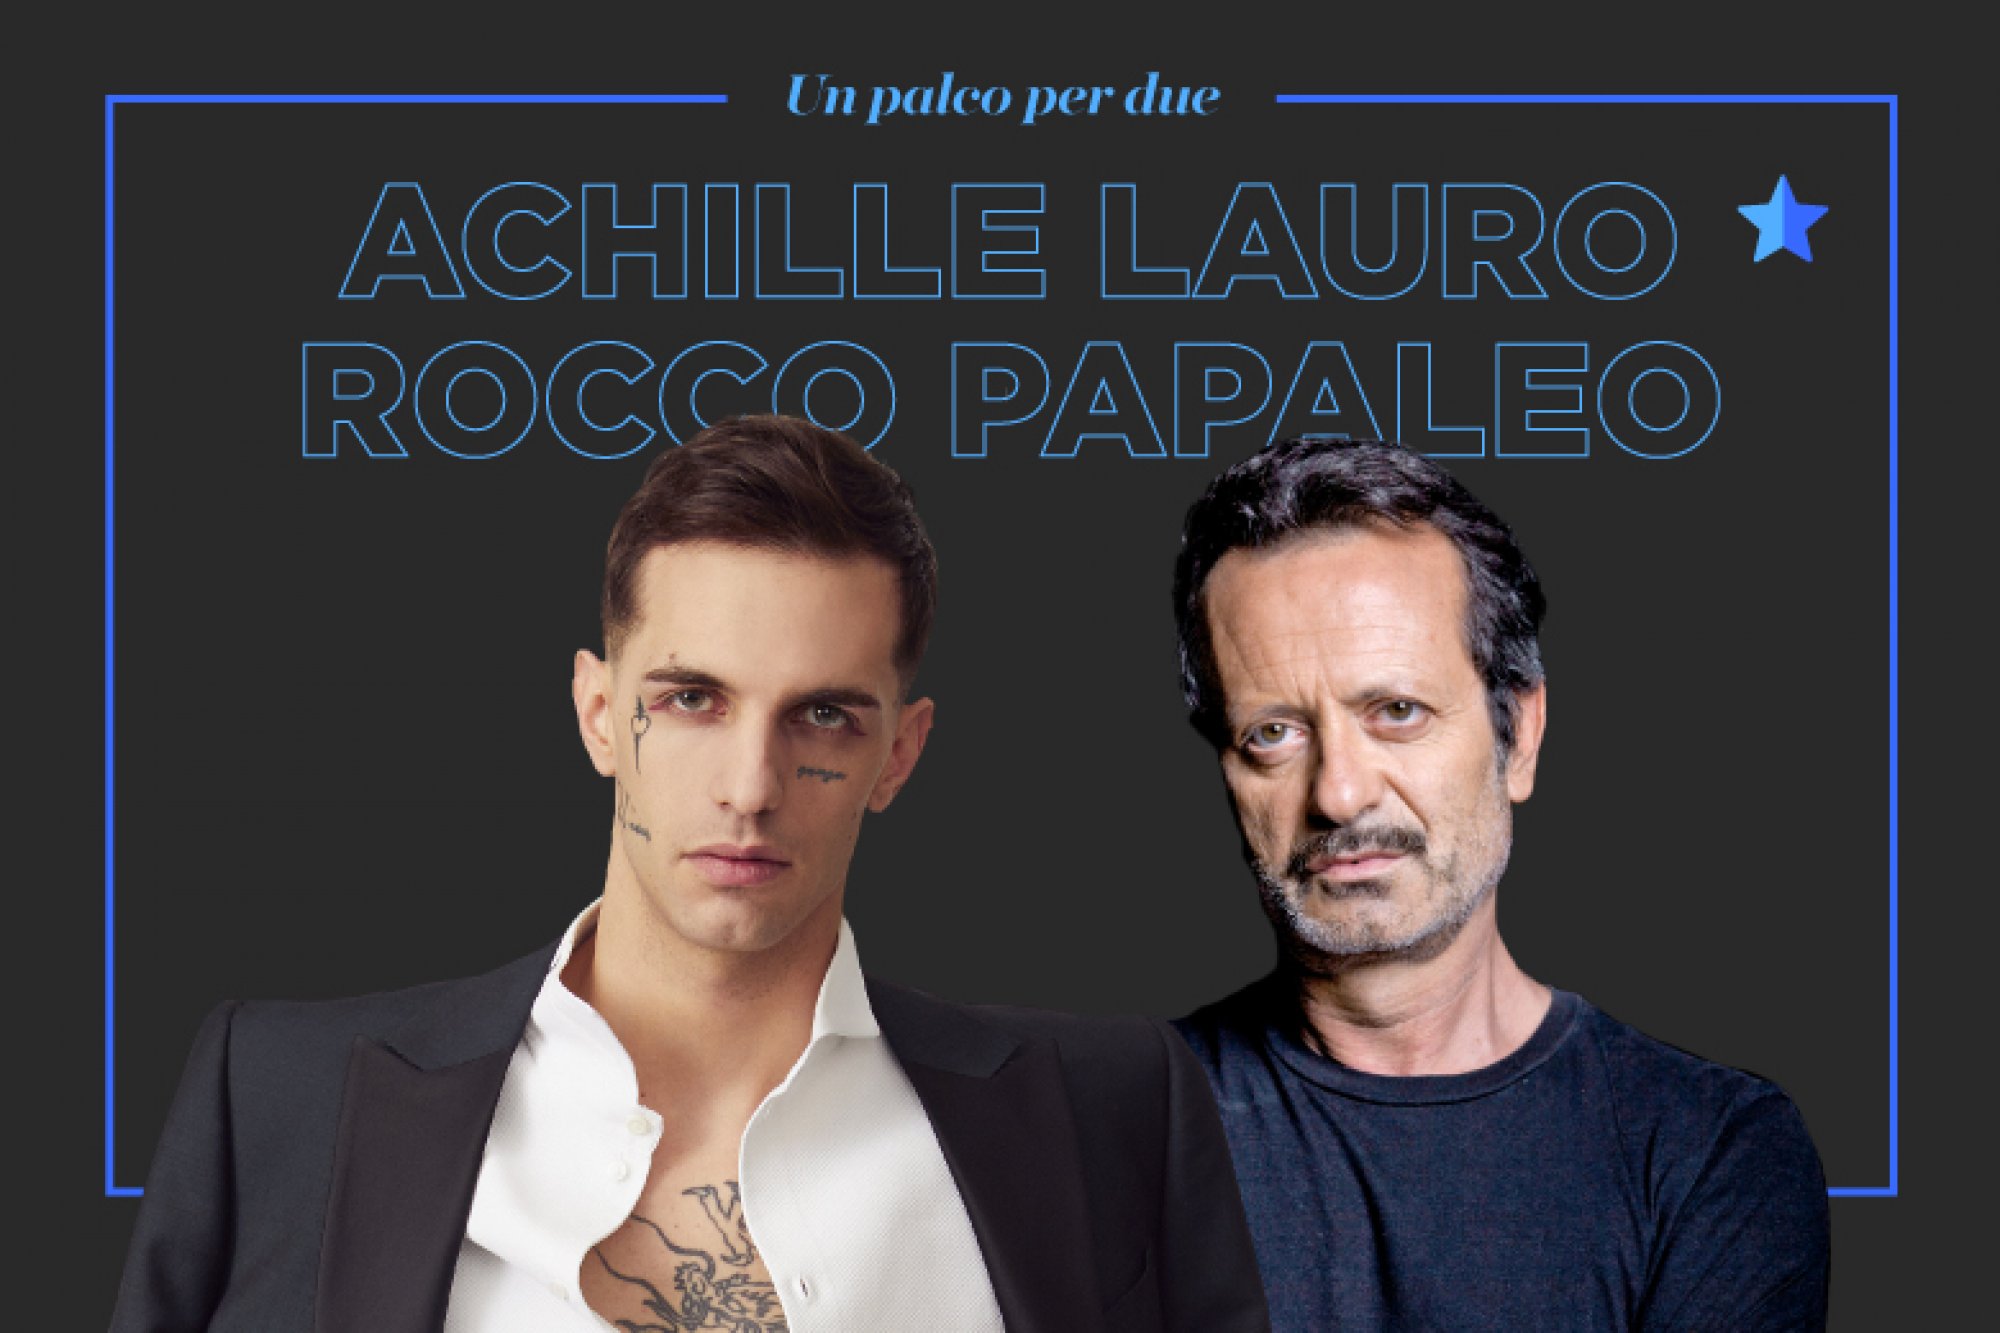 ACHILLE LAURO e ROCCO PAPALEO